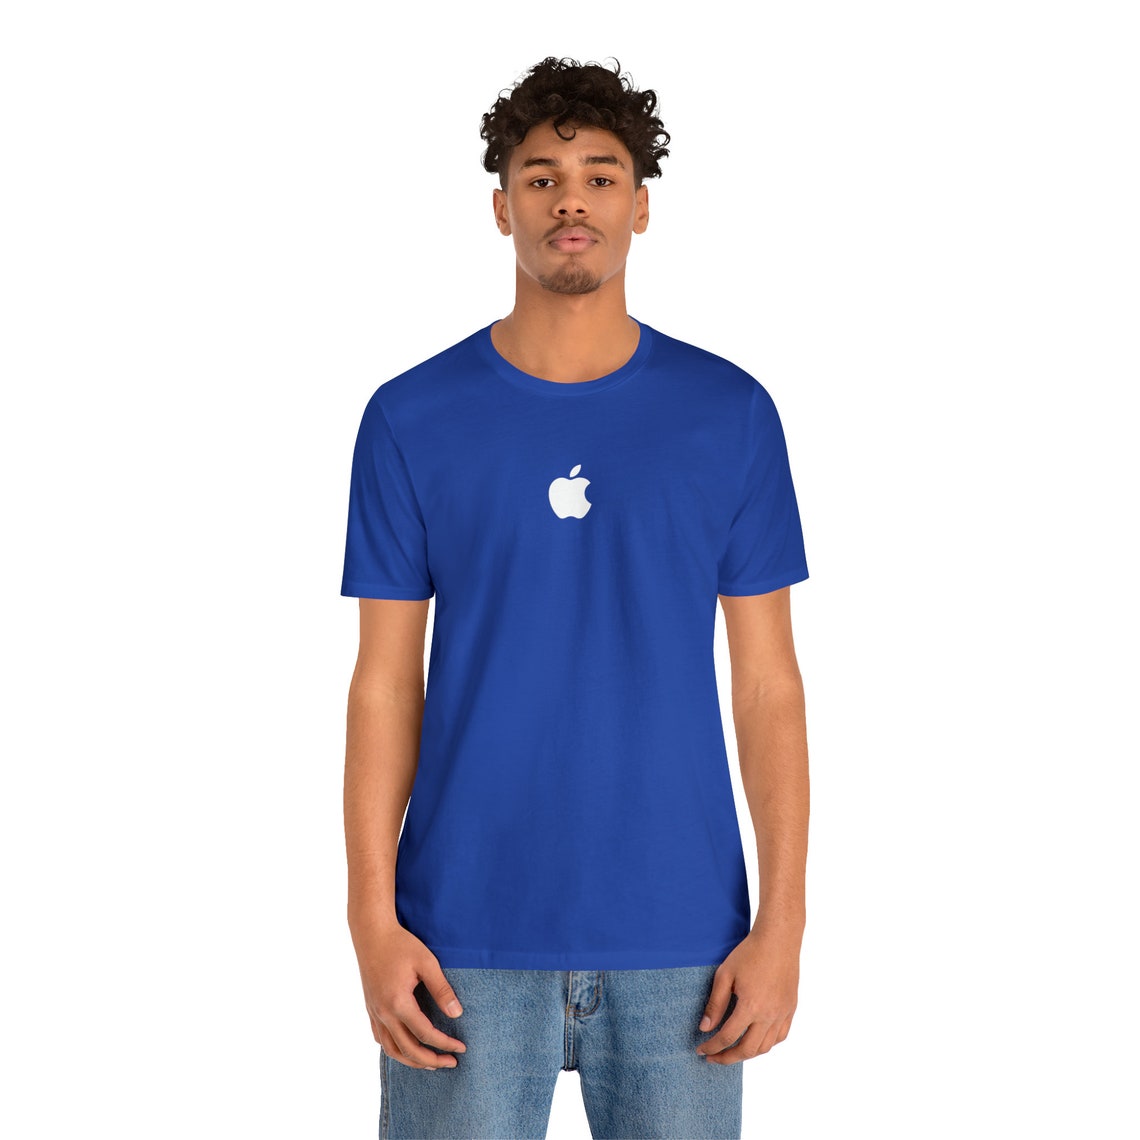 Apple Genius T-shirt - Etsy Canada